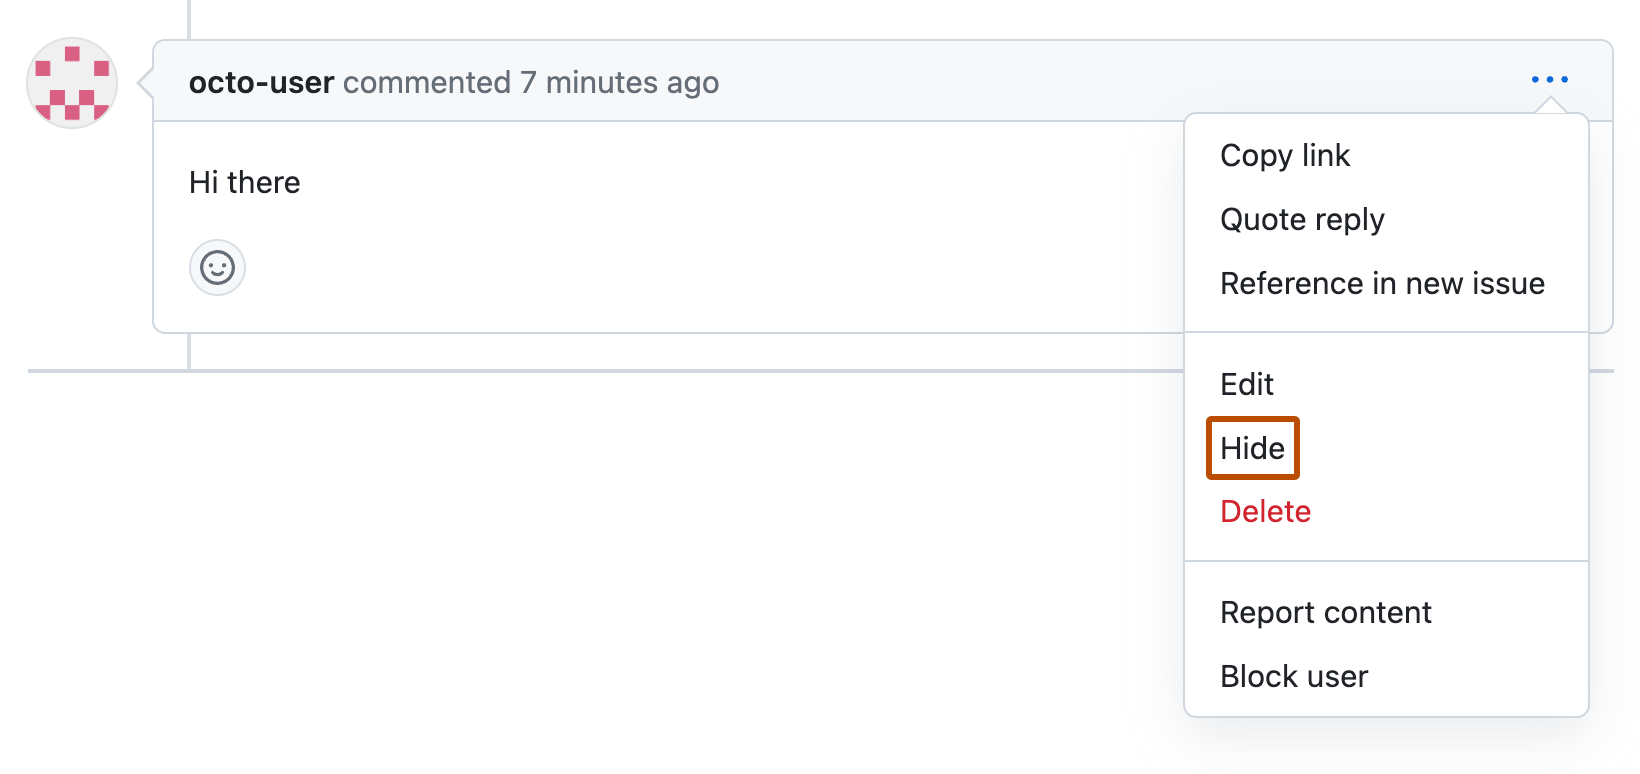 Снимок экрана: комментарий к запросу на вытягивание от octo-user. Под значком с тремя горизонтальными точками разворачивается раскрывающееся меню, а "Скрыть" выделено оранжевым цветом.